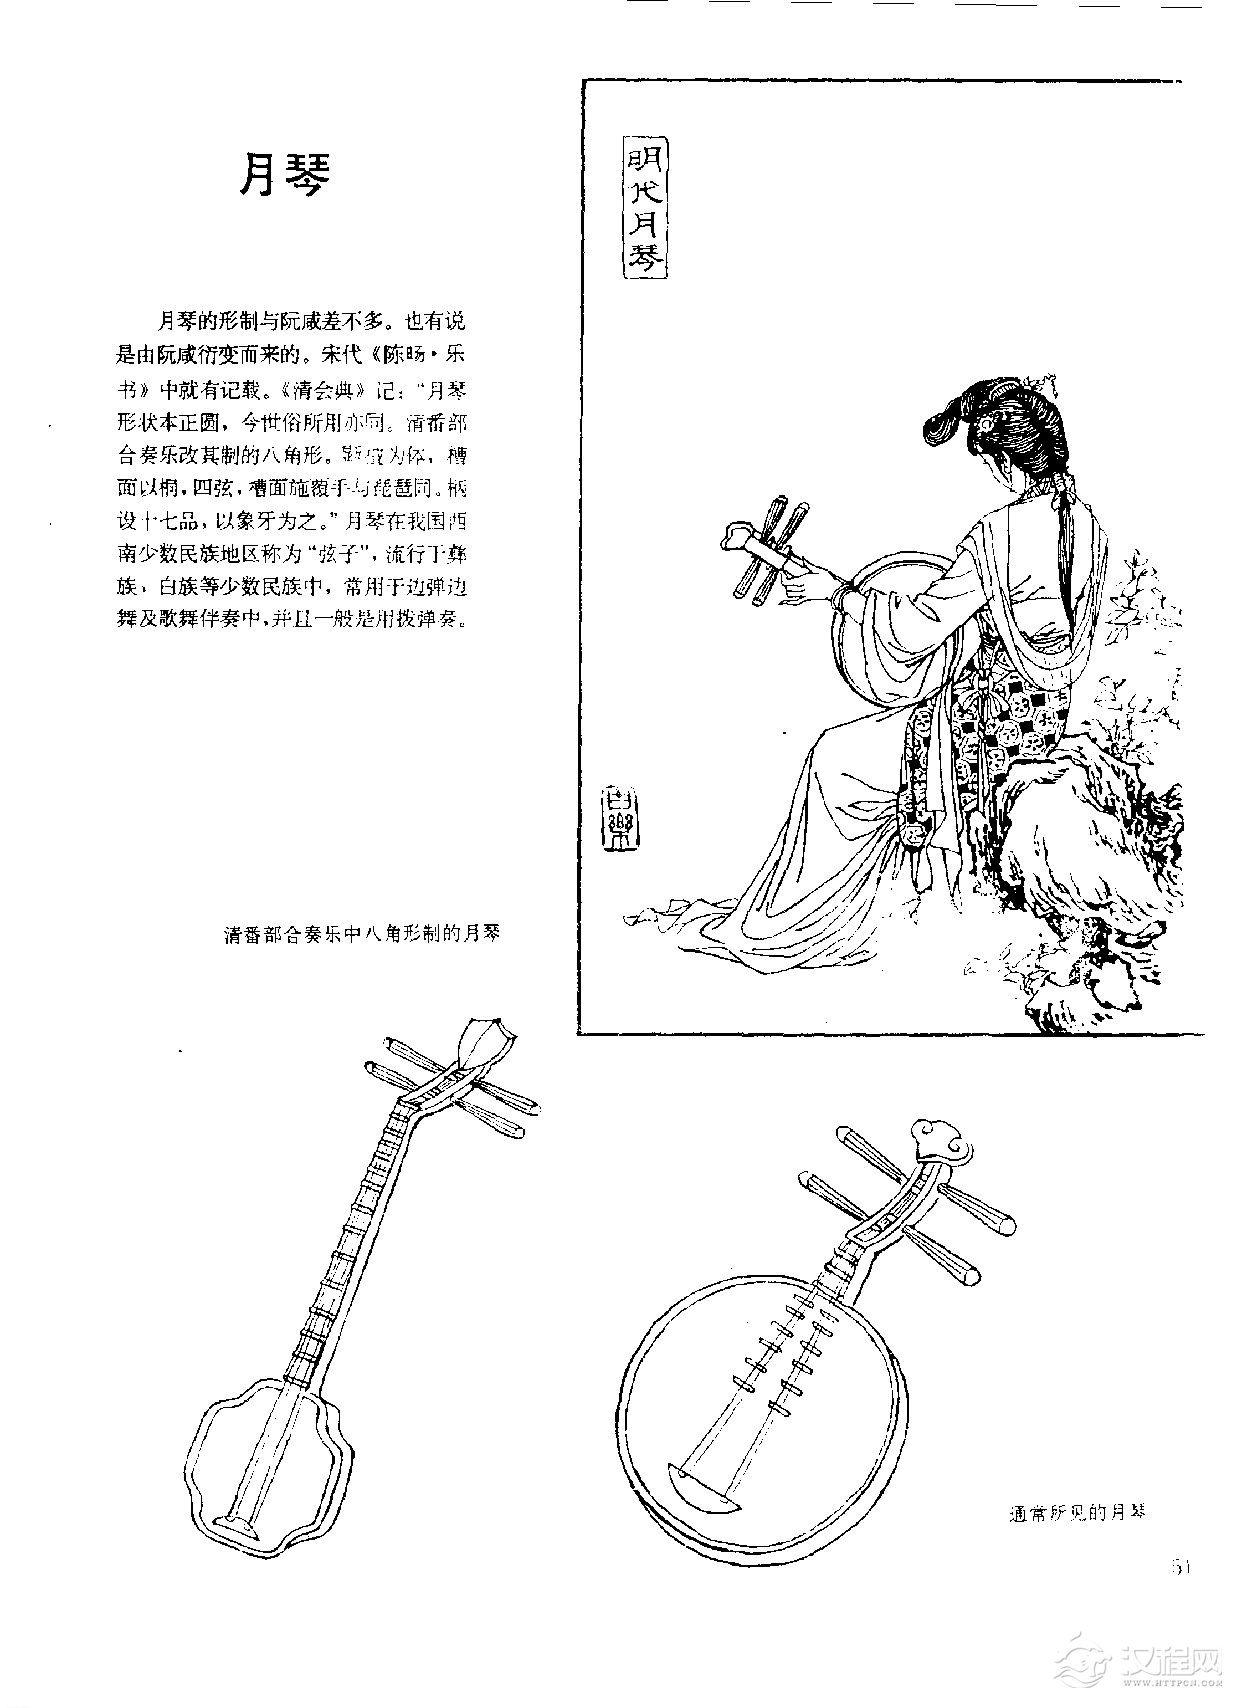 中国古代乐器《月琴》